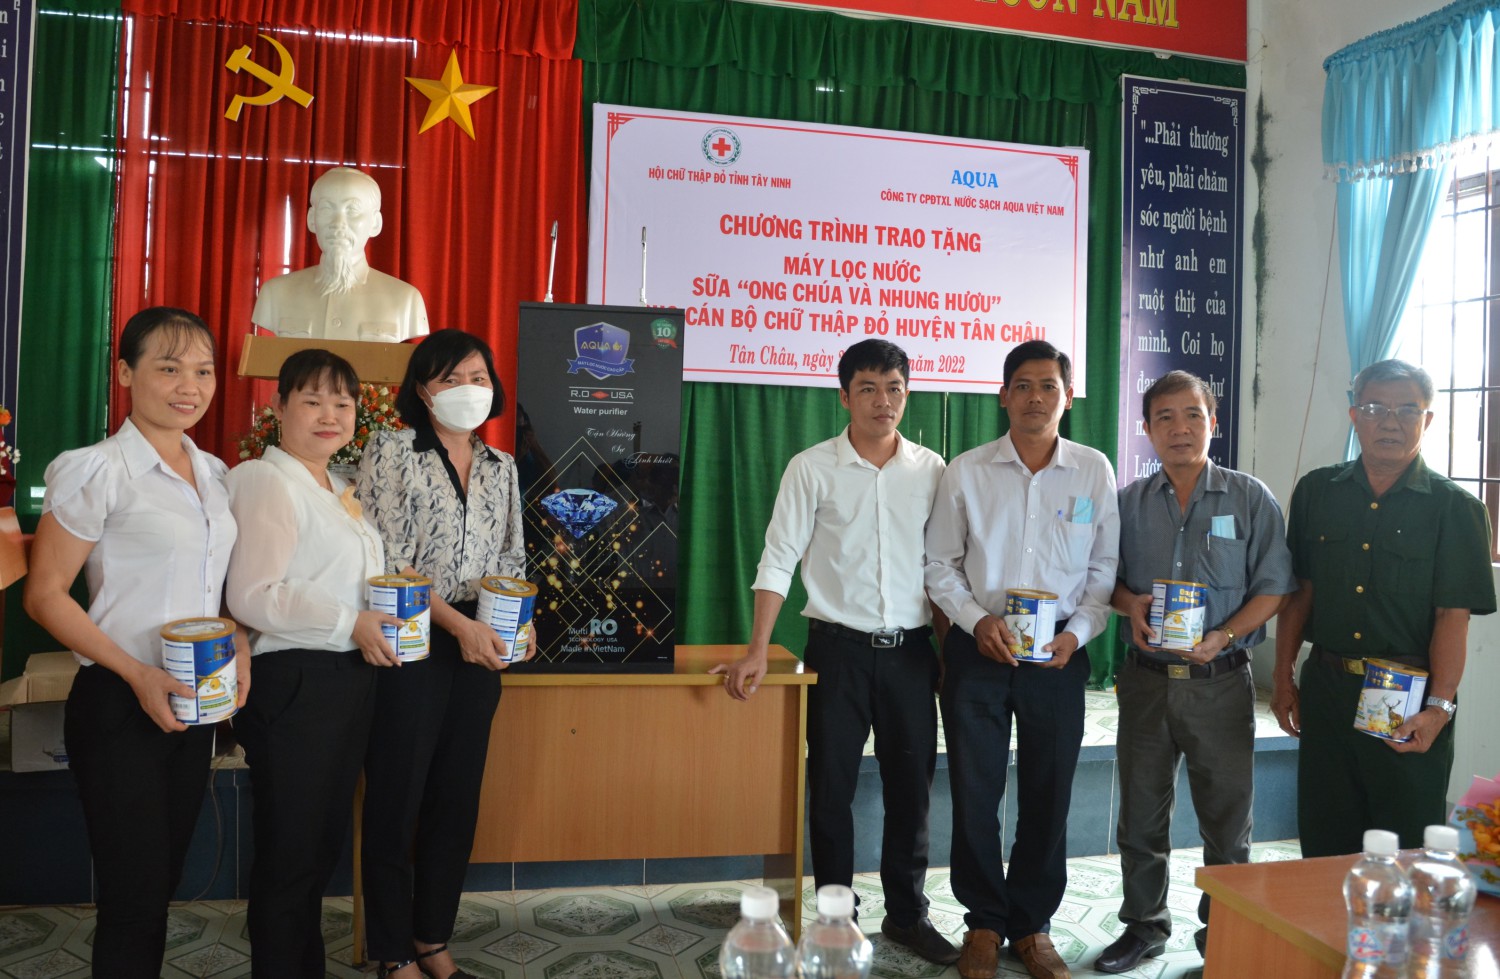 Công ty Cổ phần đầu tư xử lý nước sạch AQUA Việt Nam trao tặng máy lọc nước và sữa Ong chúa Nhung hươu  cho Hội chữ thập đỏ huyện Tân Châu